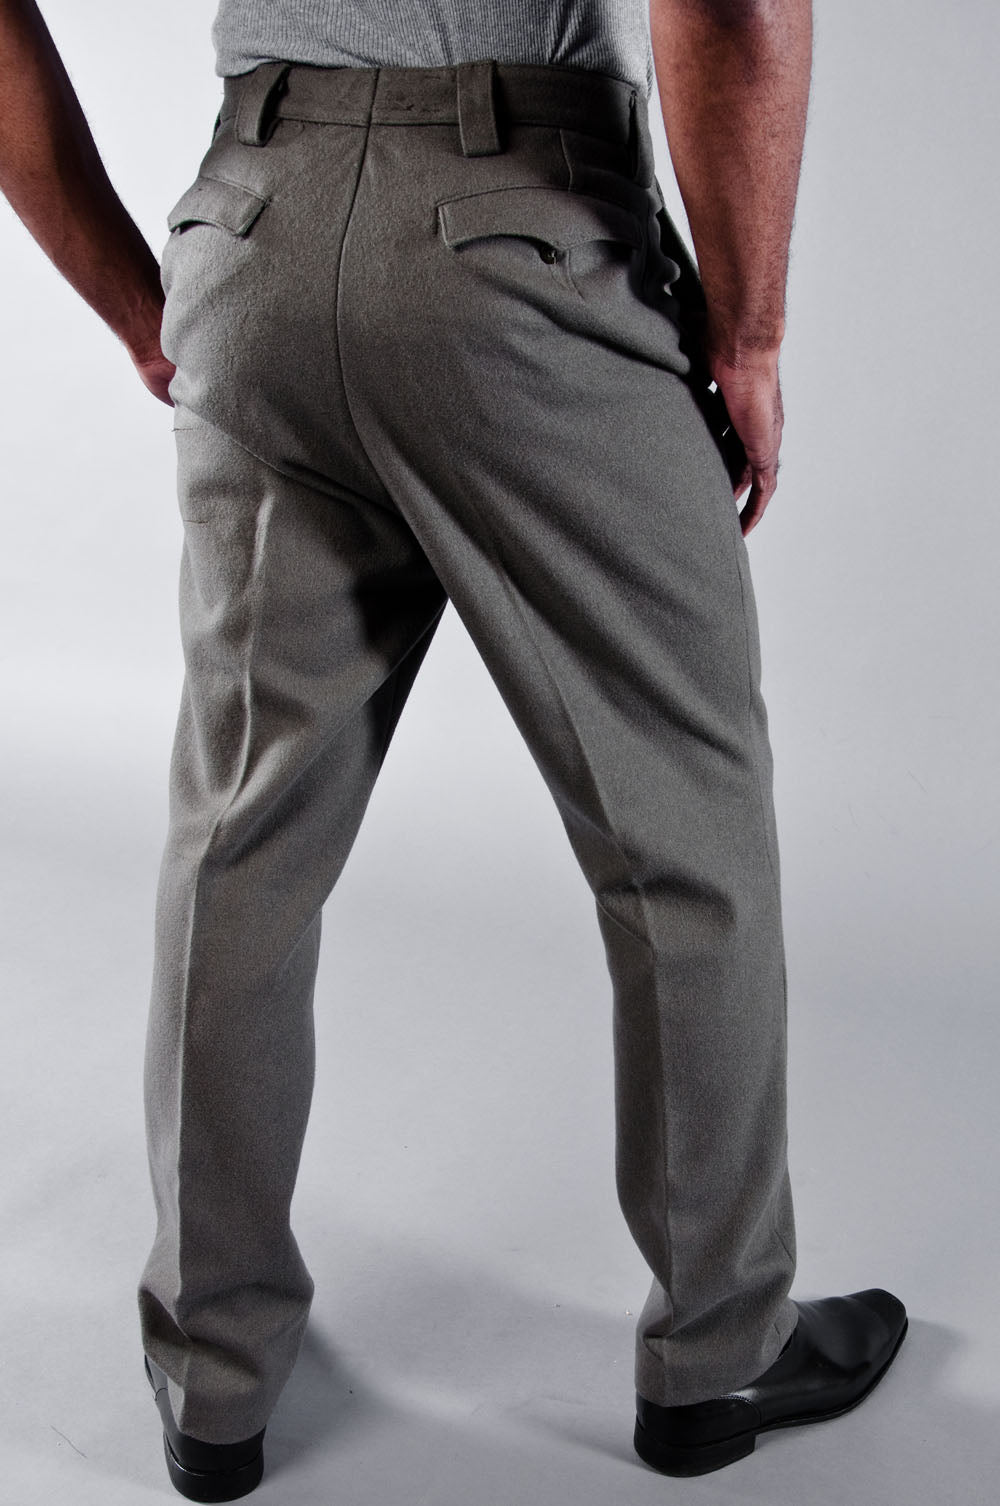 Lauren Ralph Lauren Men's Wool Flannel Classic-Fit Suit Pants - Macy's